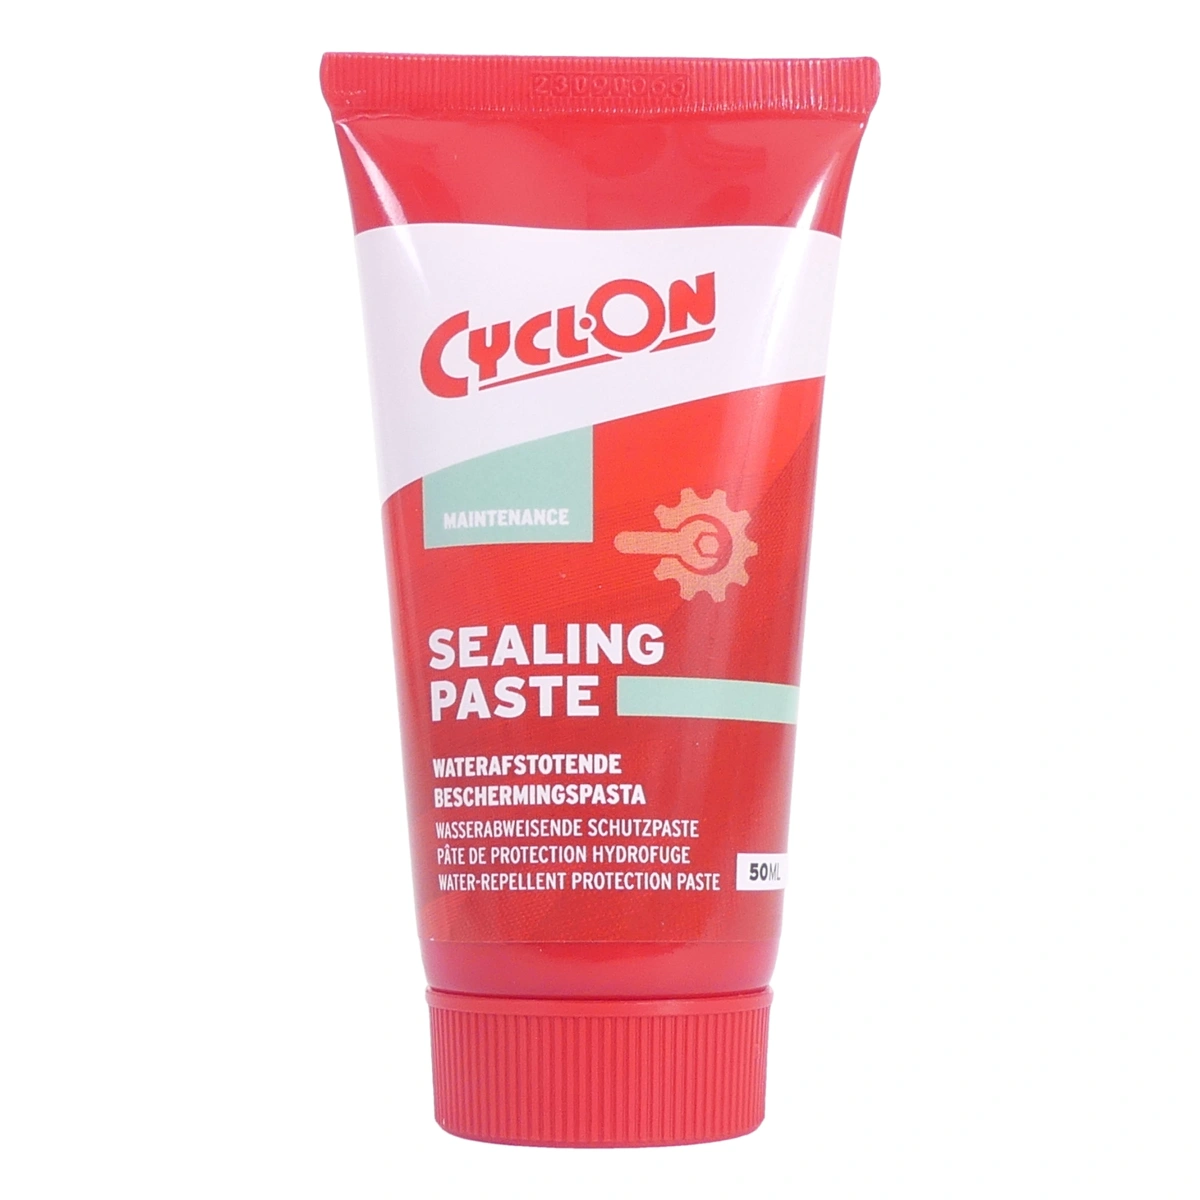 Cyclon Sealing Paste (50ml) - Montagepasta voor fietslagers